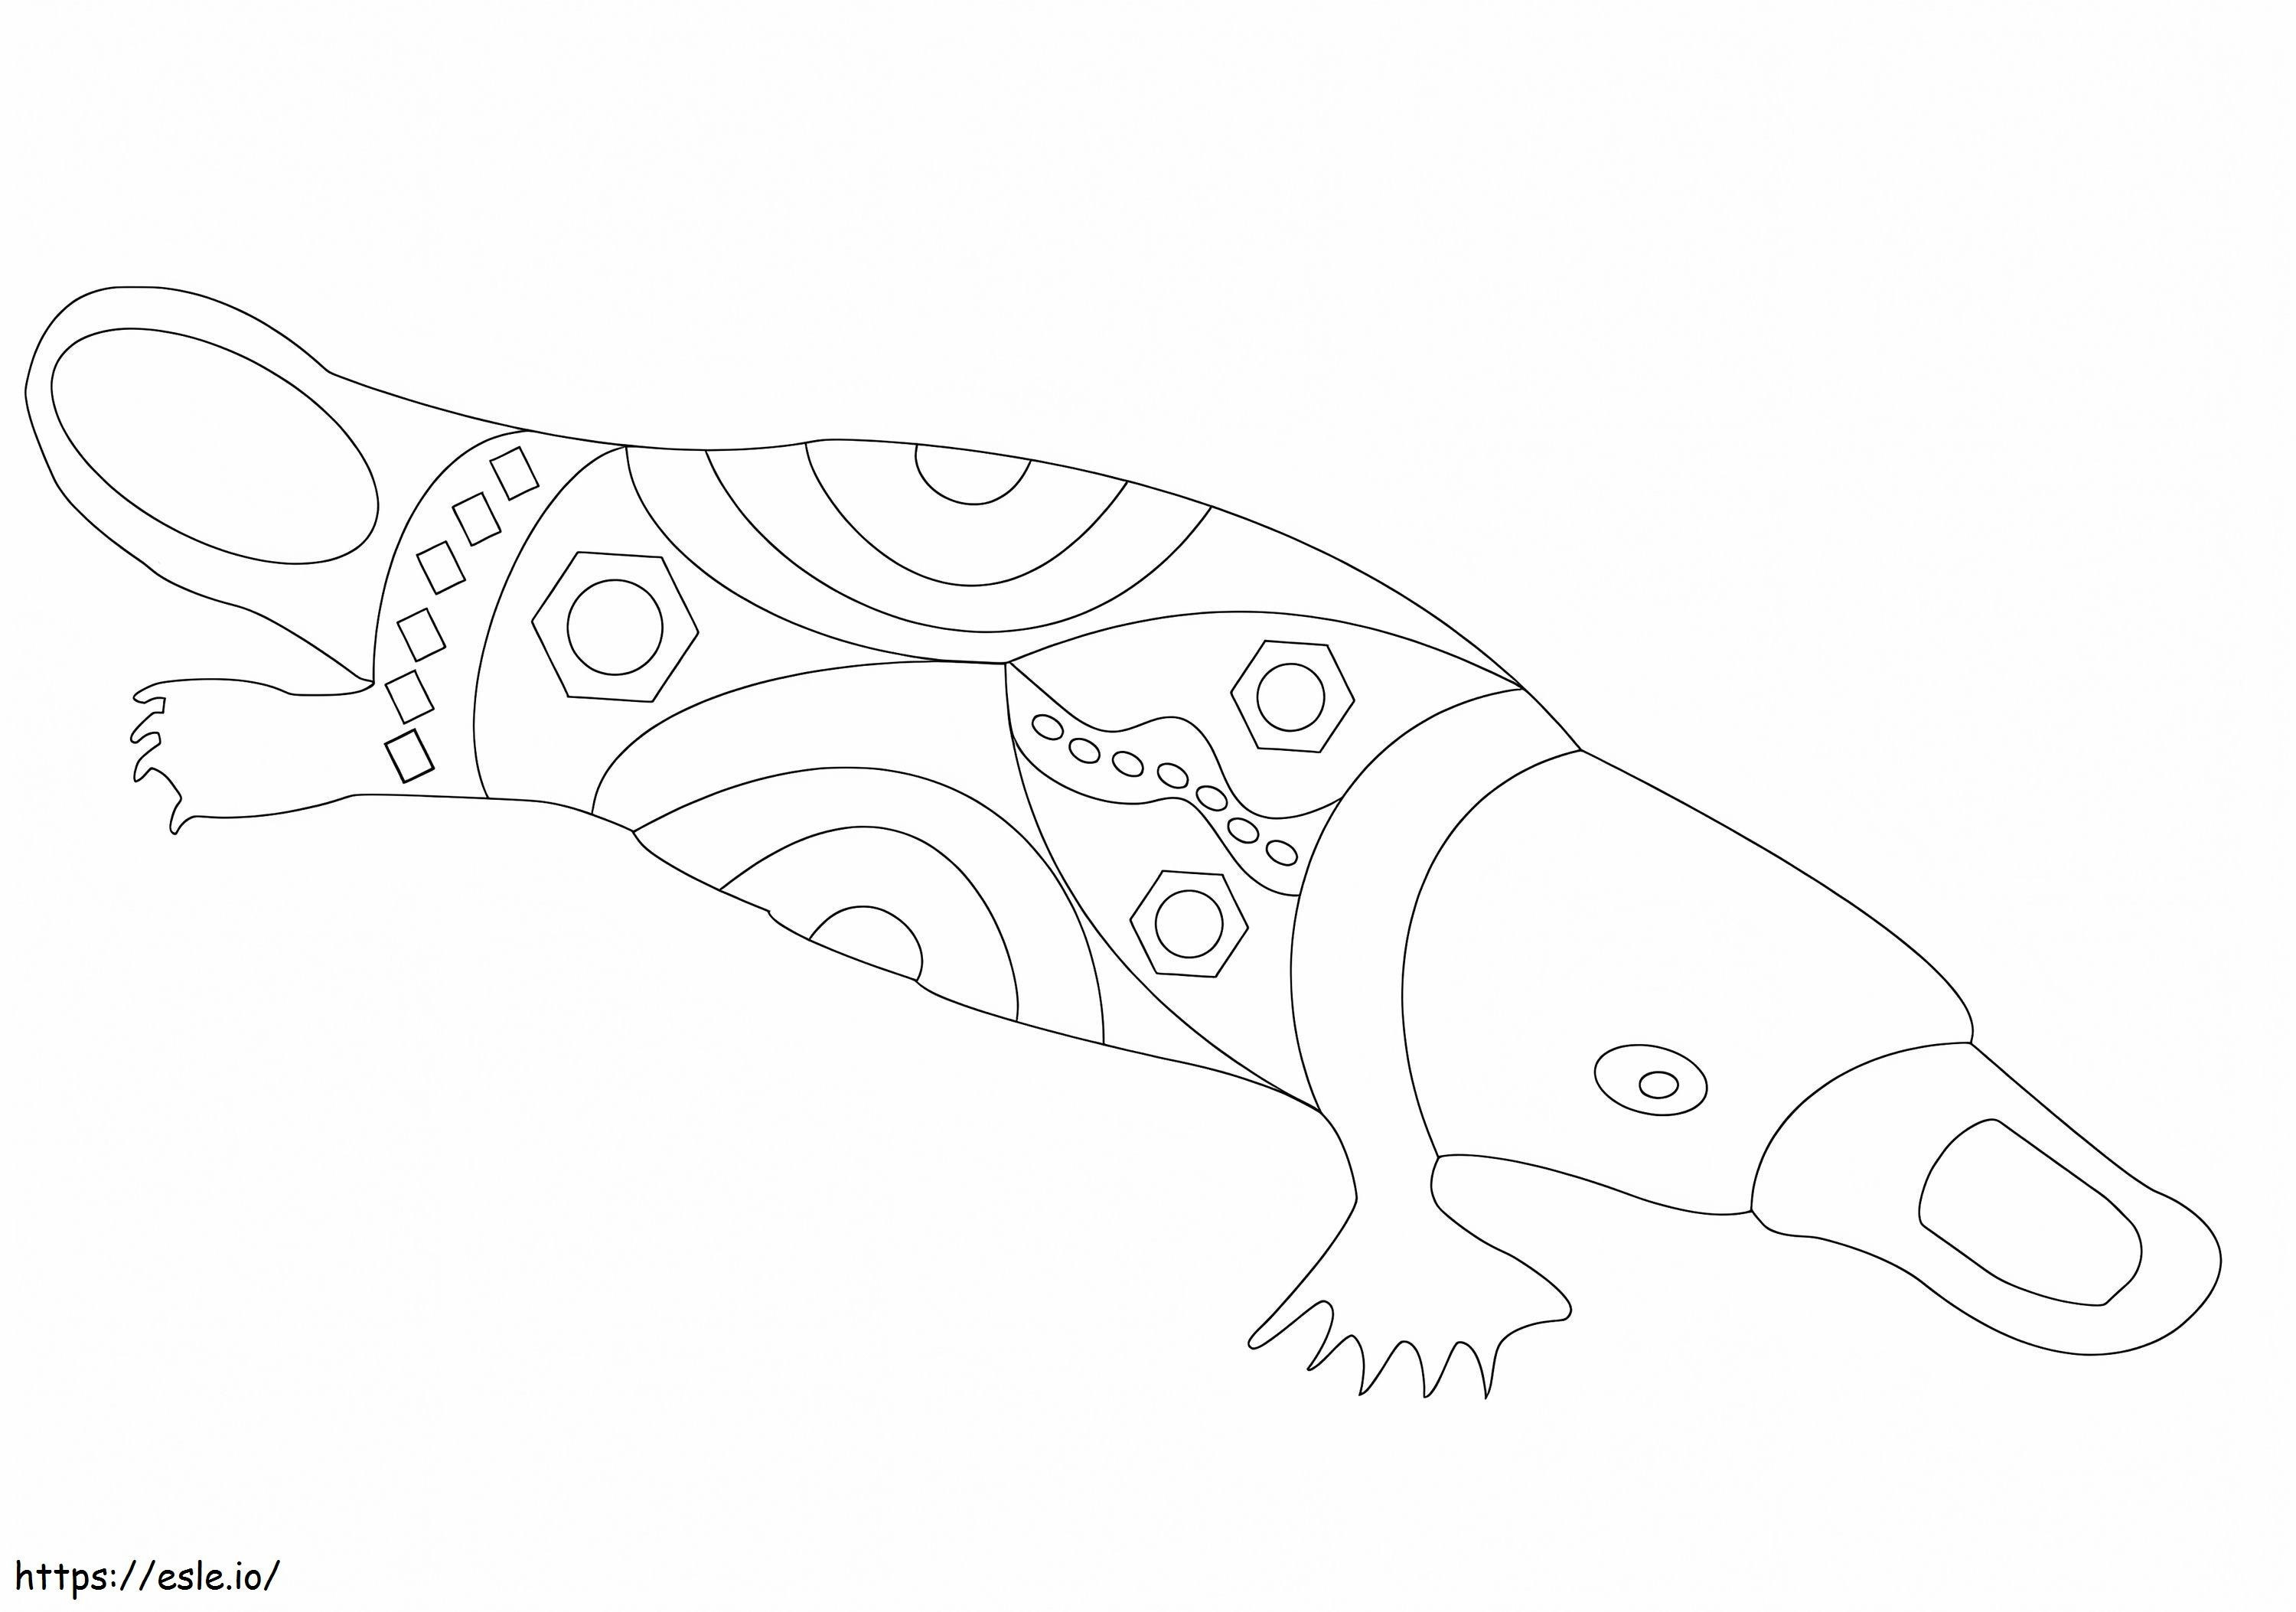 Aborijin Sanatı Ornitorenk boyama